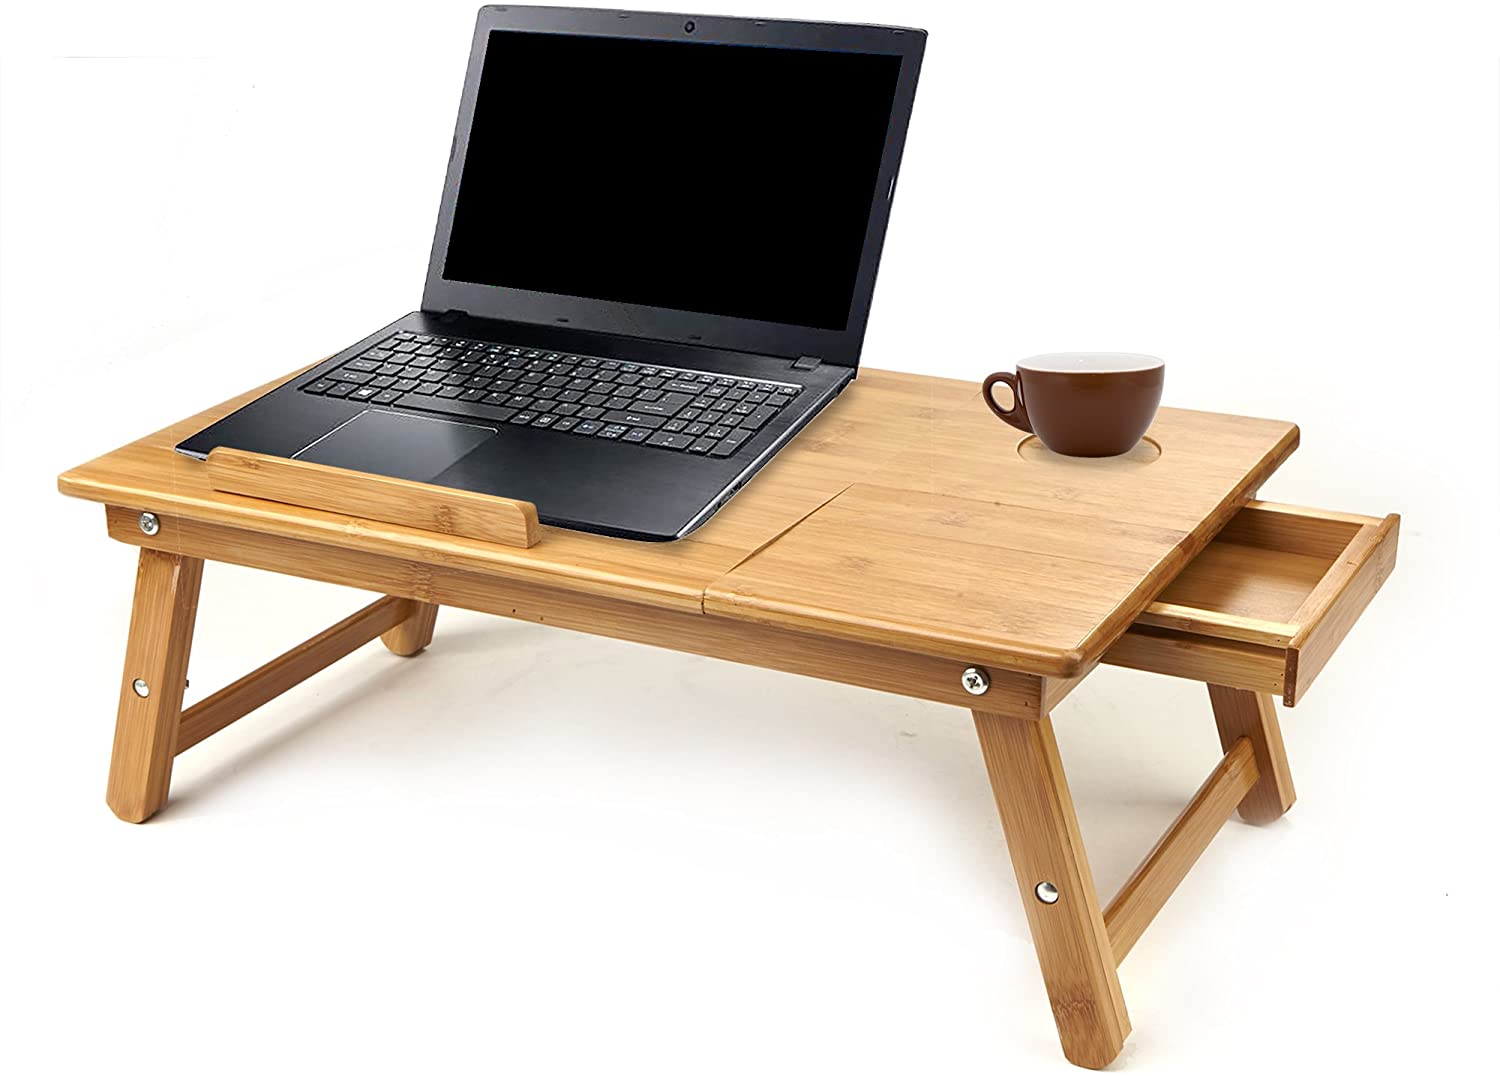 Μικρό ξύλινο γραφείο με laptop και καφέ κούπα πάνω του, το οποίο μπορείς να κρατήσεις στην αγκαλιά σου